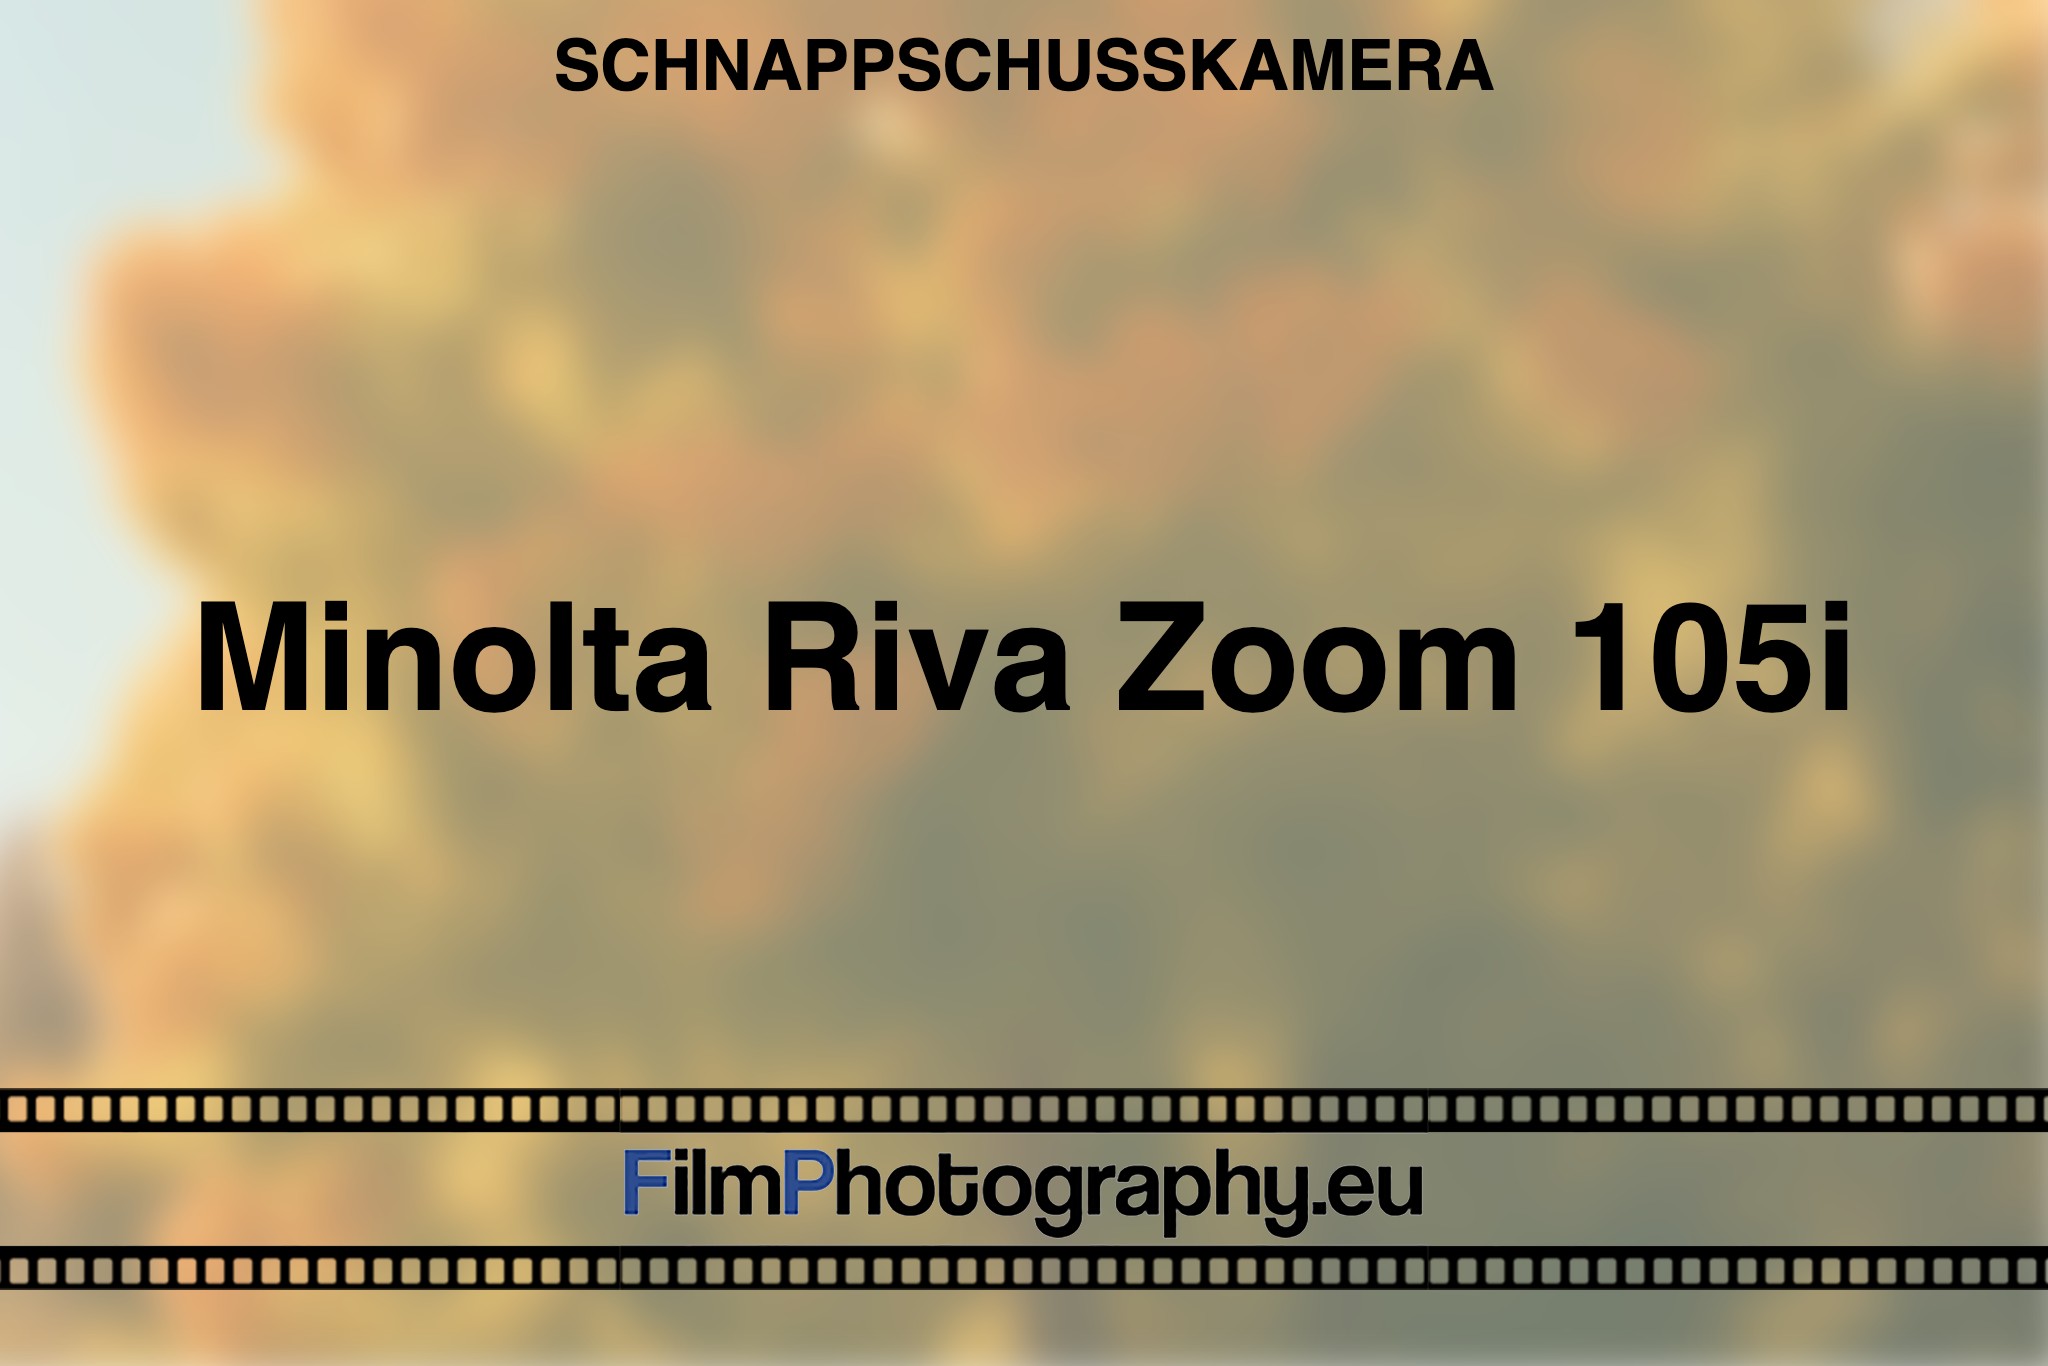 minolta-riva-zoom-105i-schnappschusskamera-bnv